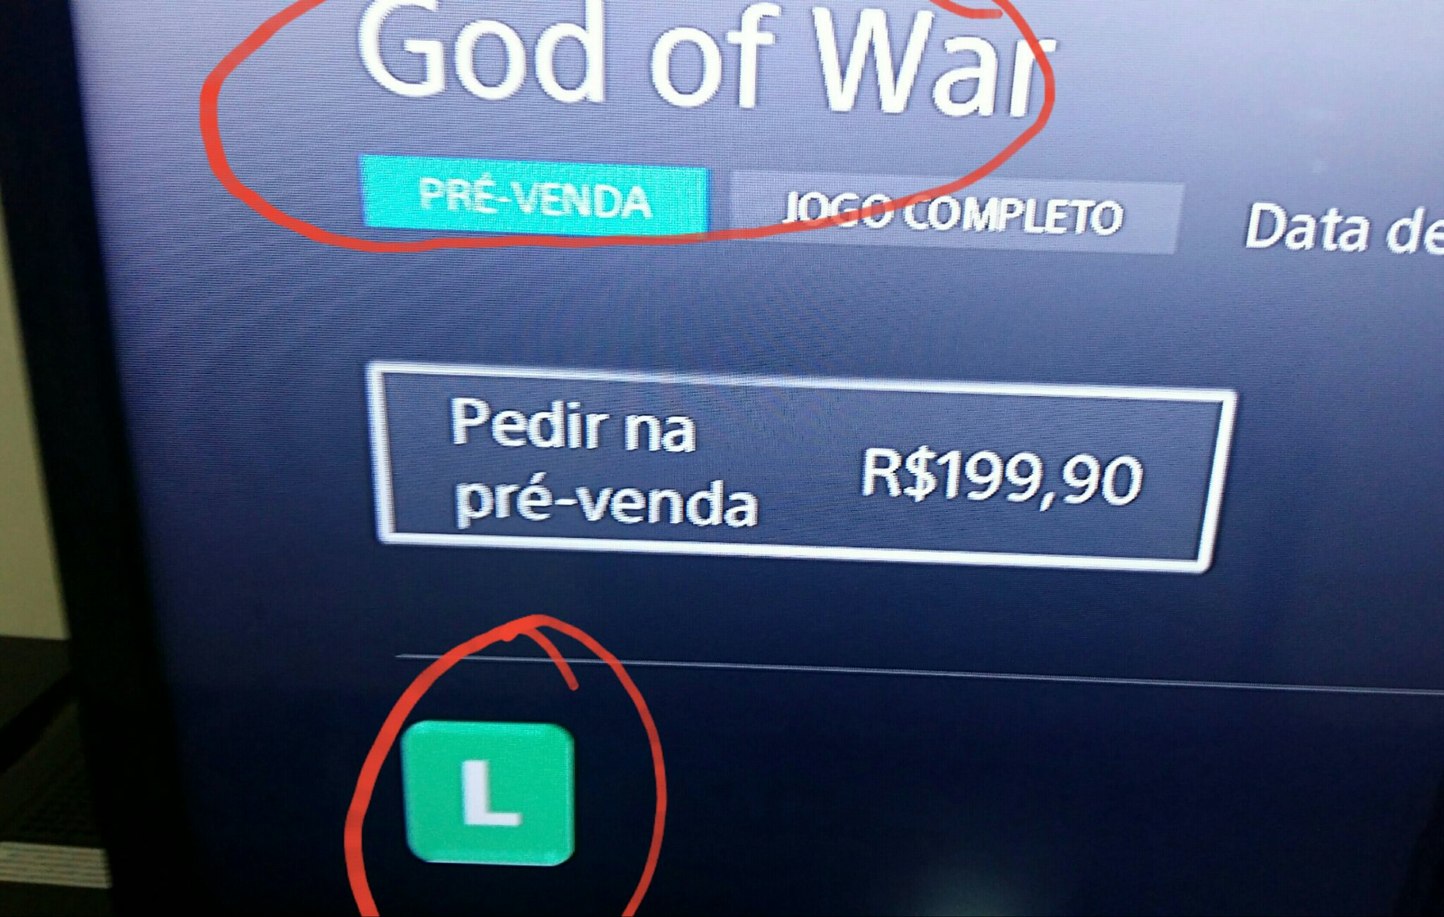 God of War livre???? - meme